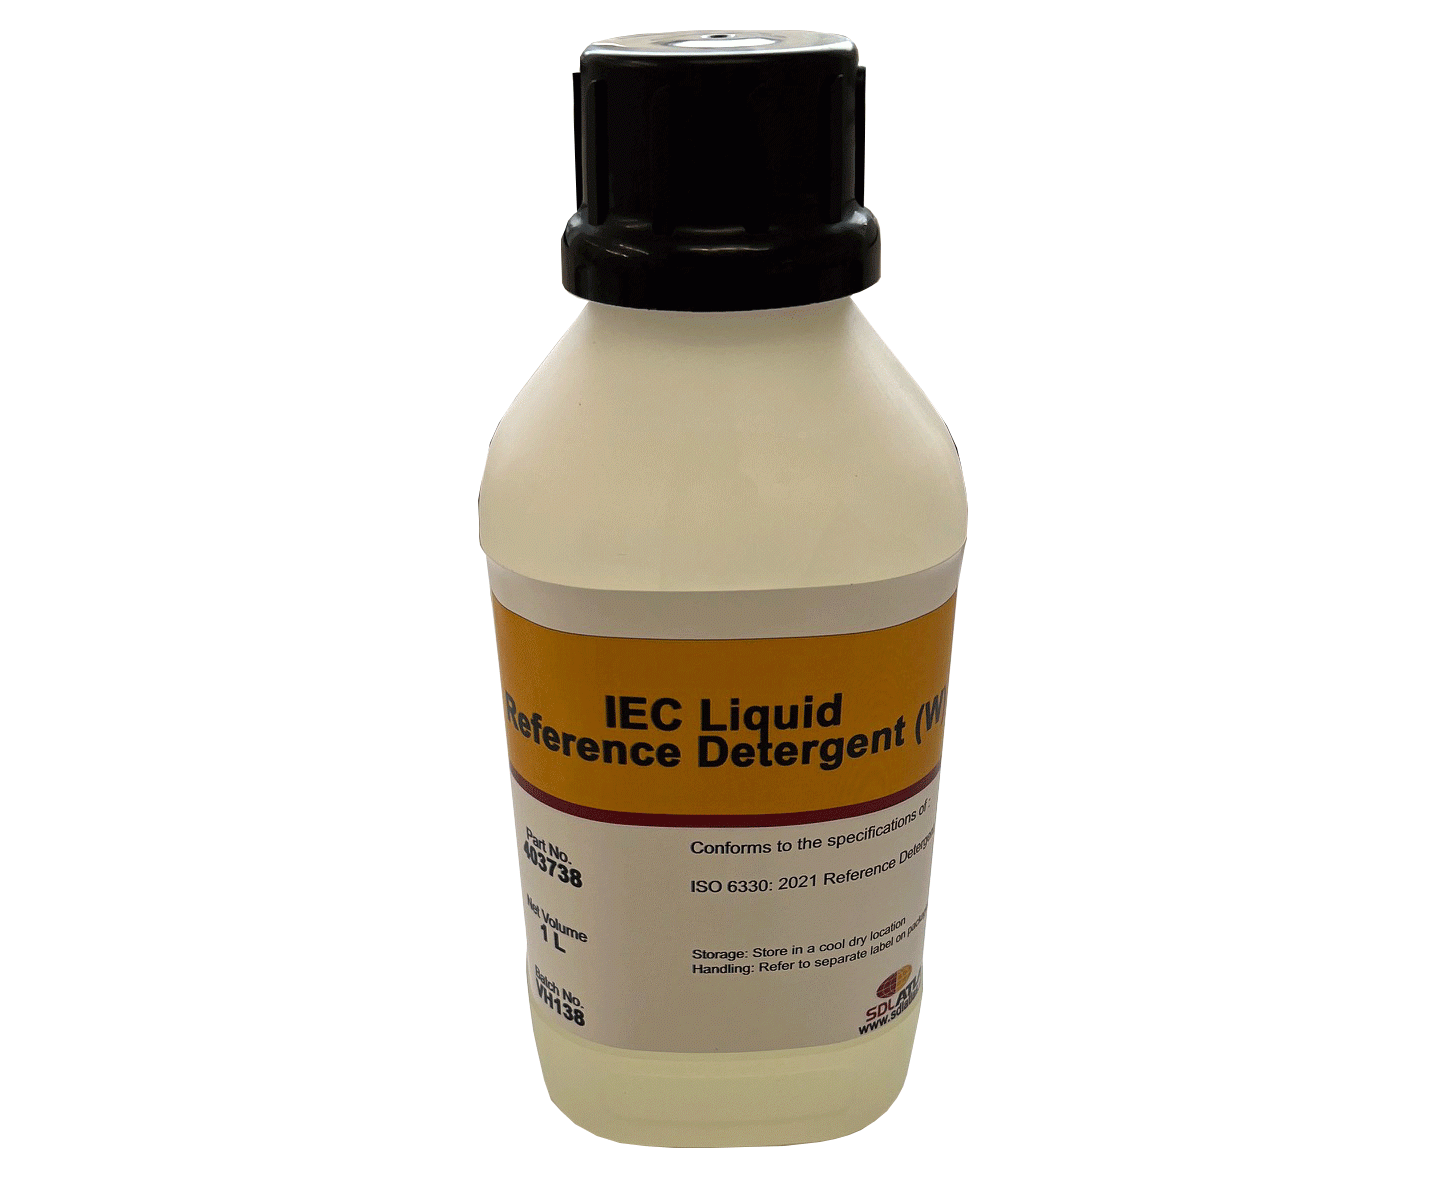 IEC 'W' Liquid Reference Detergent